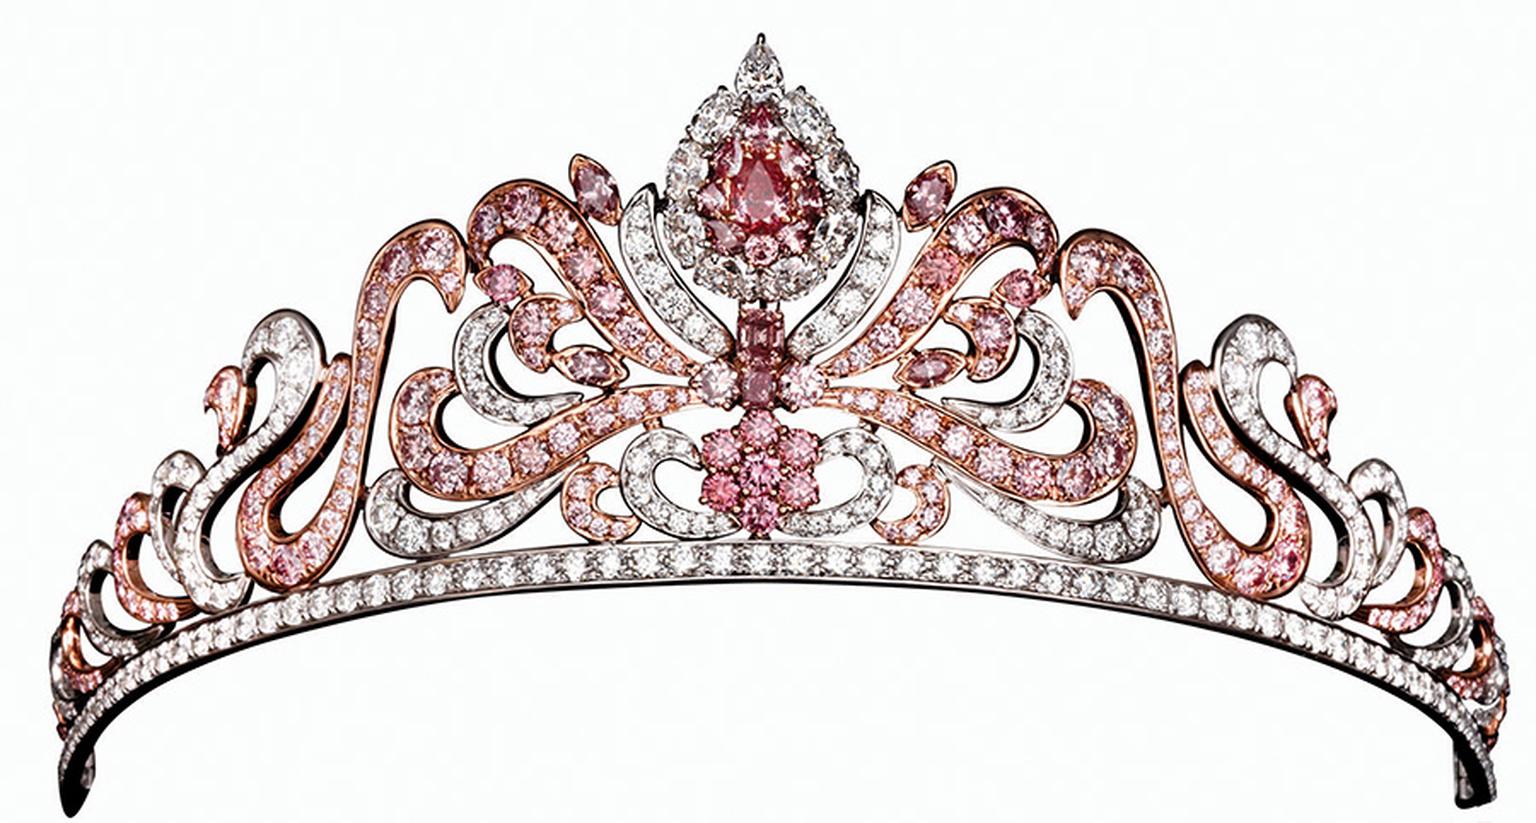 Calleija pink diamond tiara